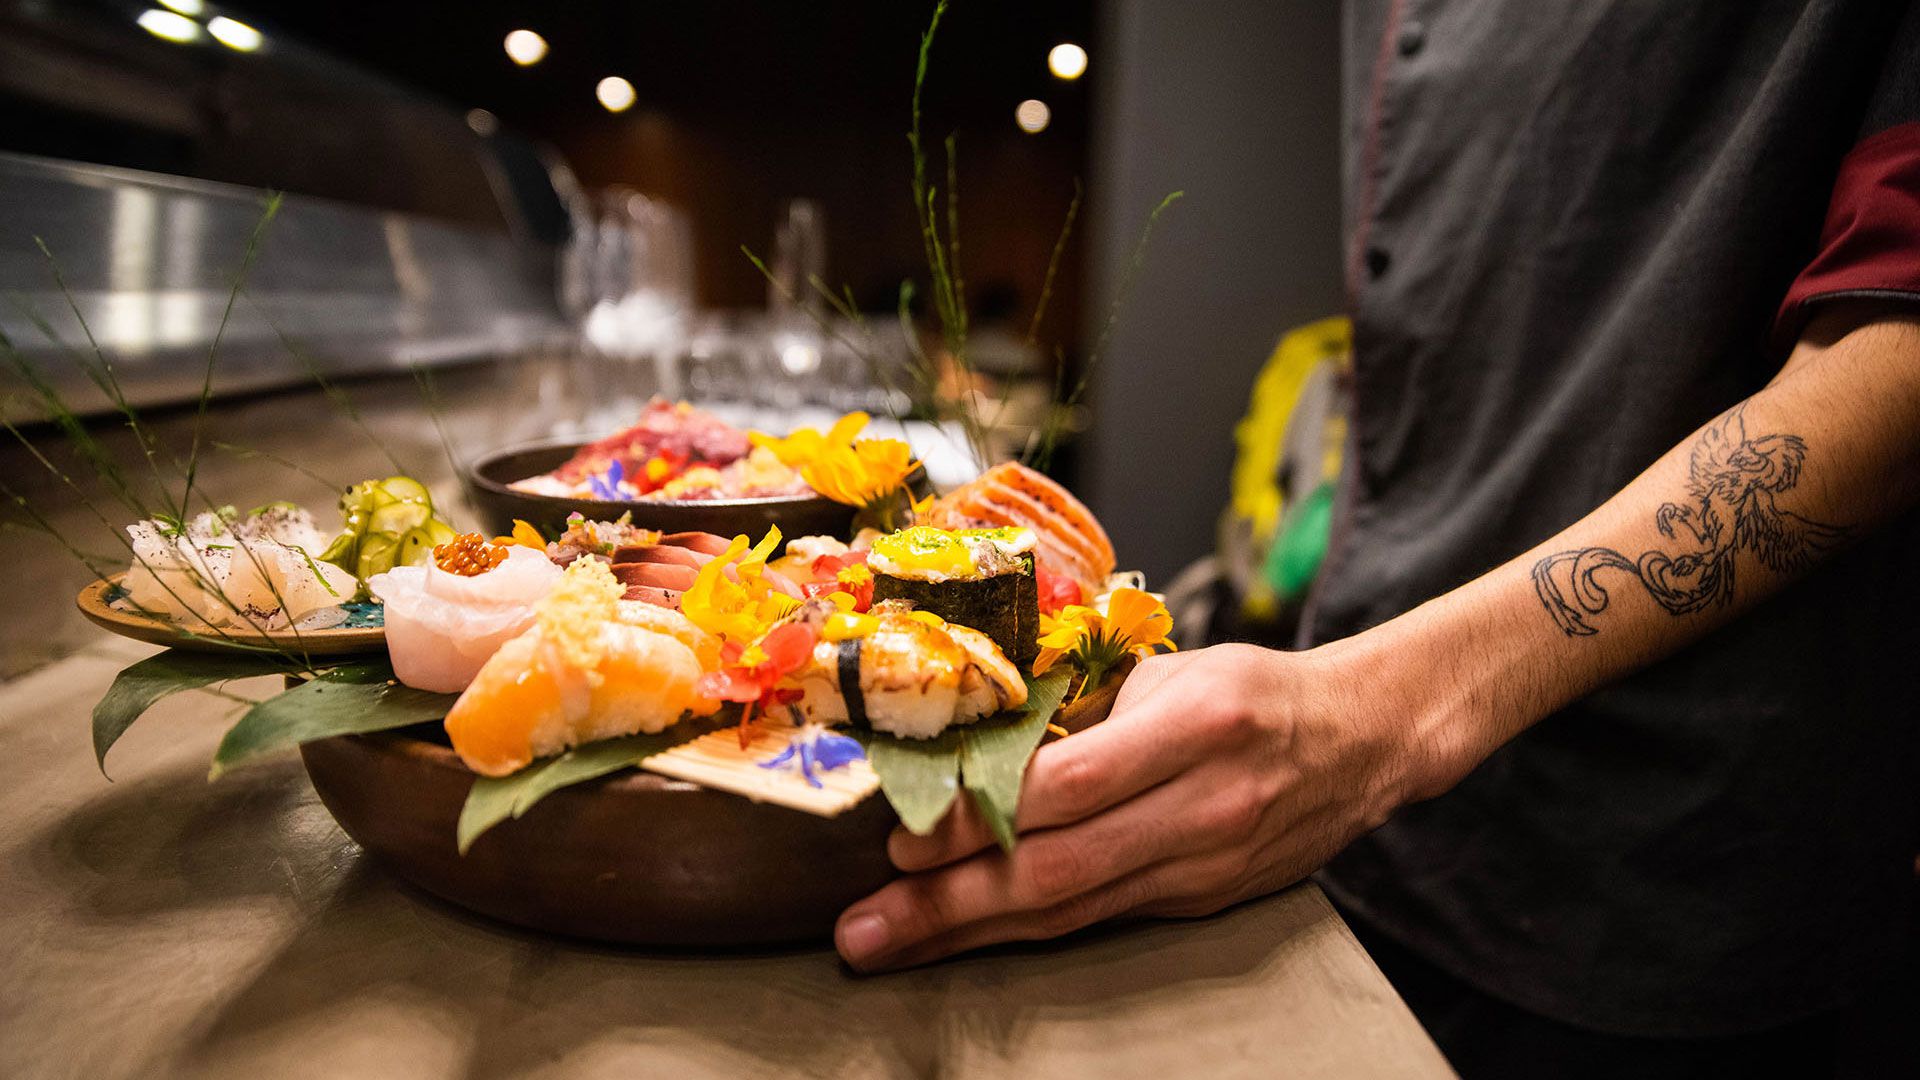 El omakase, es un plato de sushi japonés que le da la autoridad al chef para preparar lo que él desee